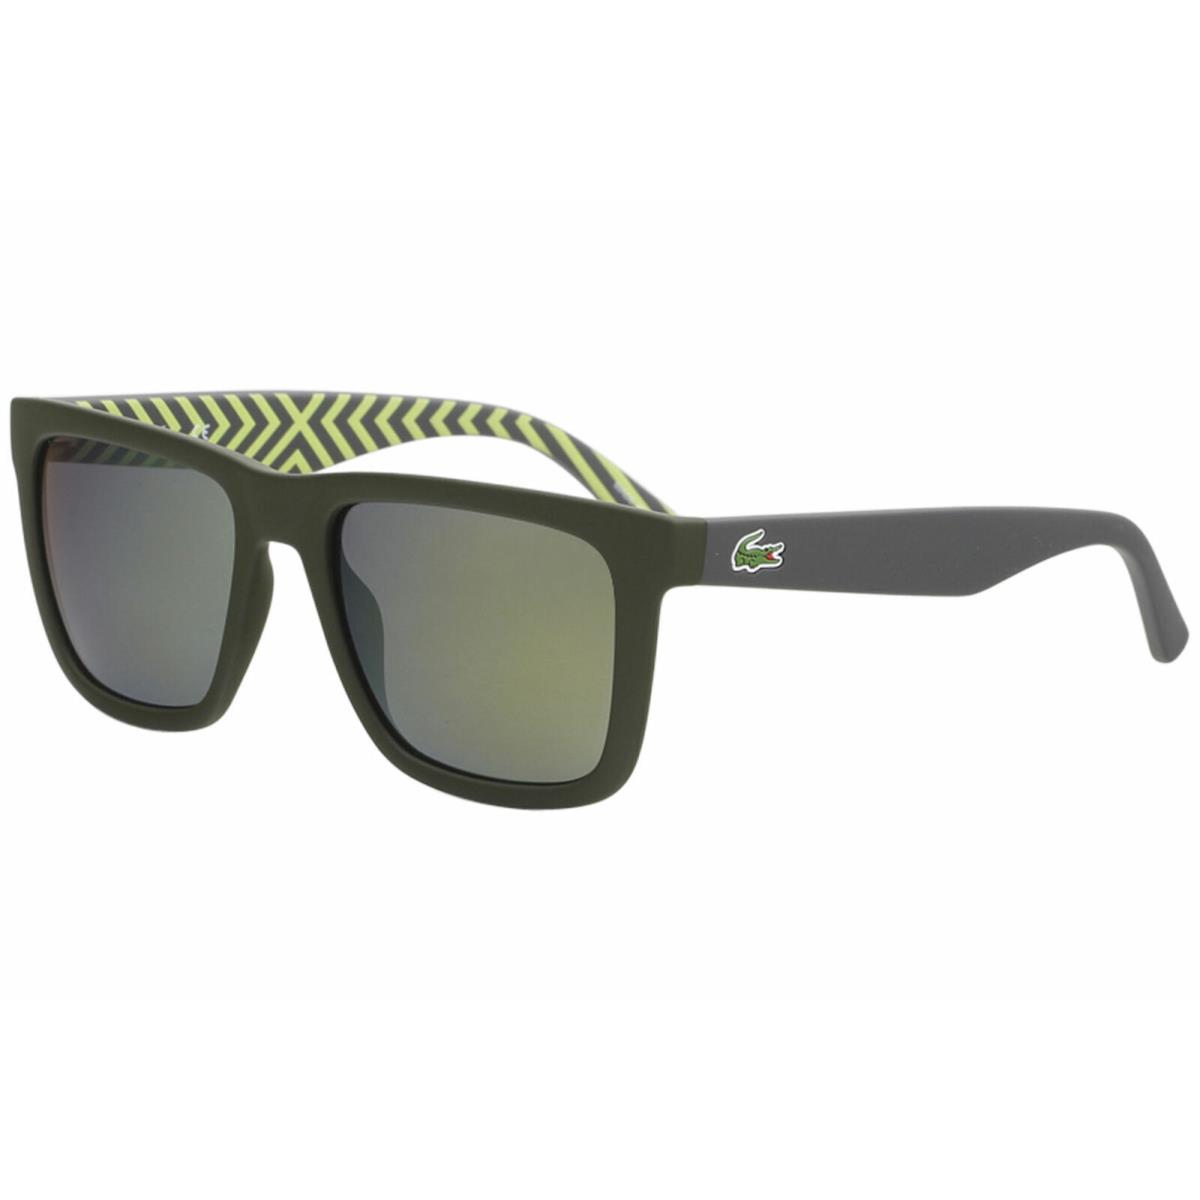 Lacoste Men Sunglasses L750S 318 Matte Army Green/polarized Grey Mirrored 100%UV